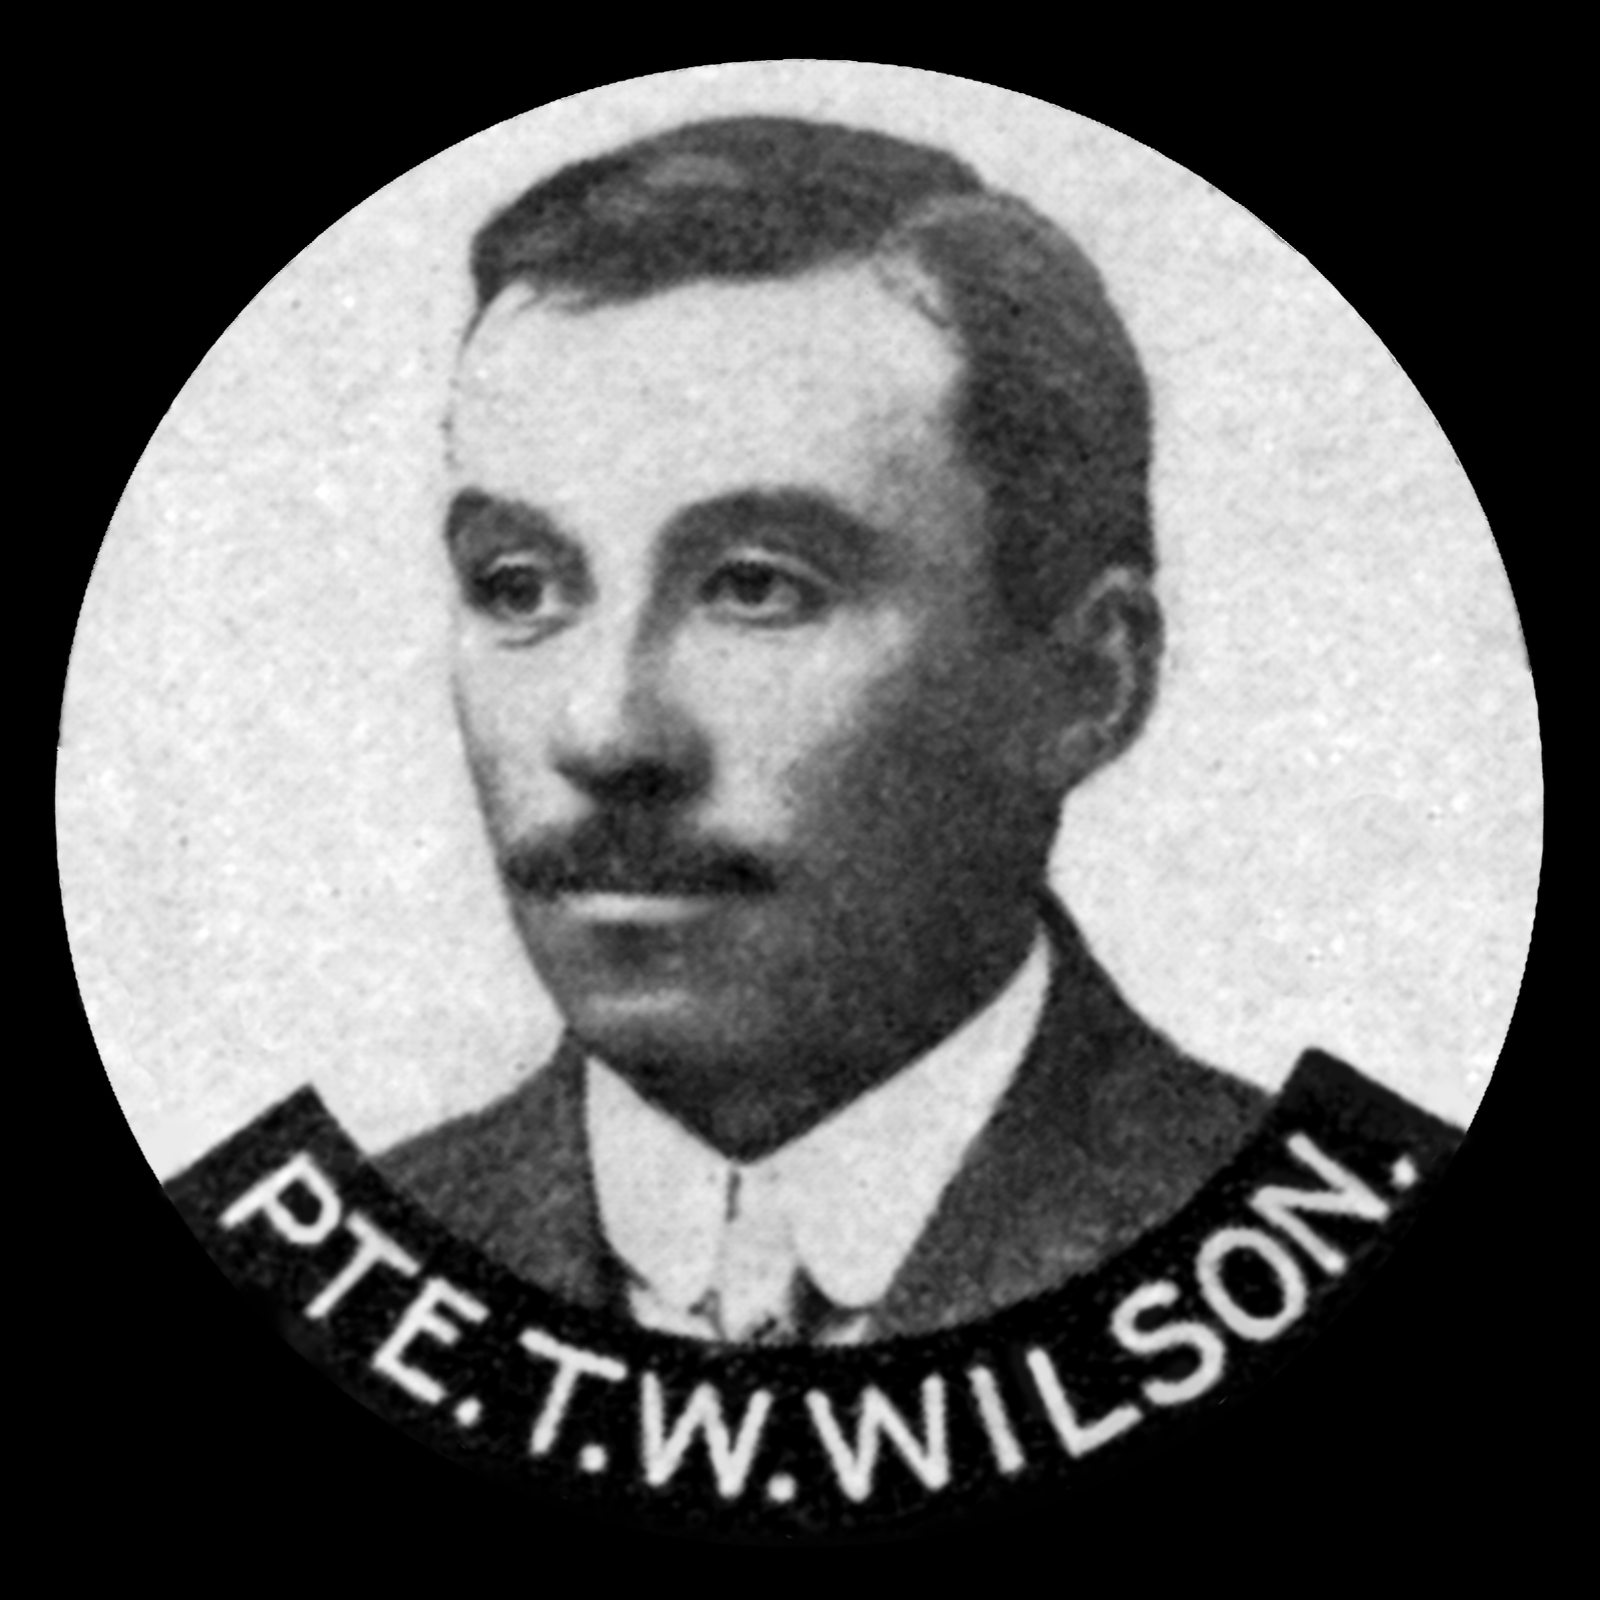 WILSON Thomas William